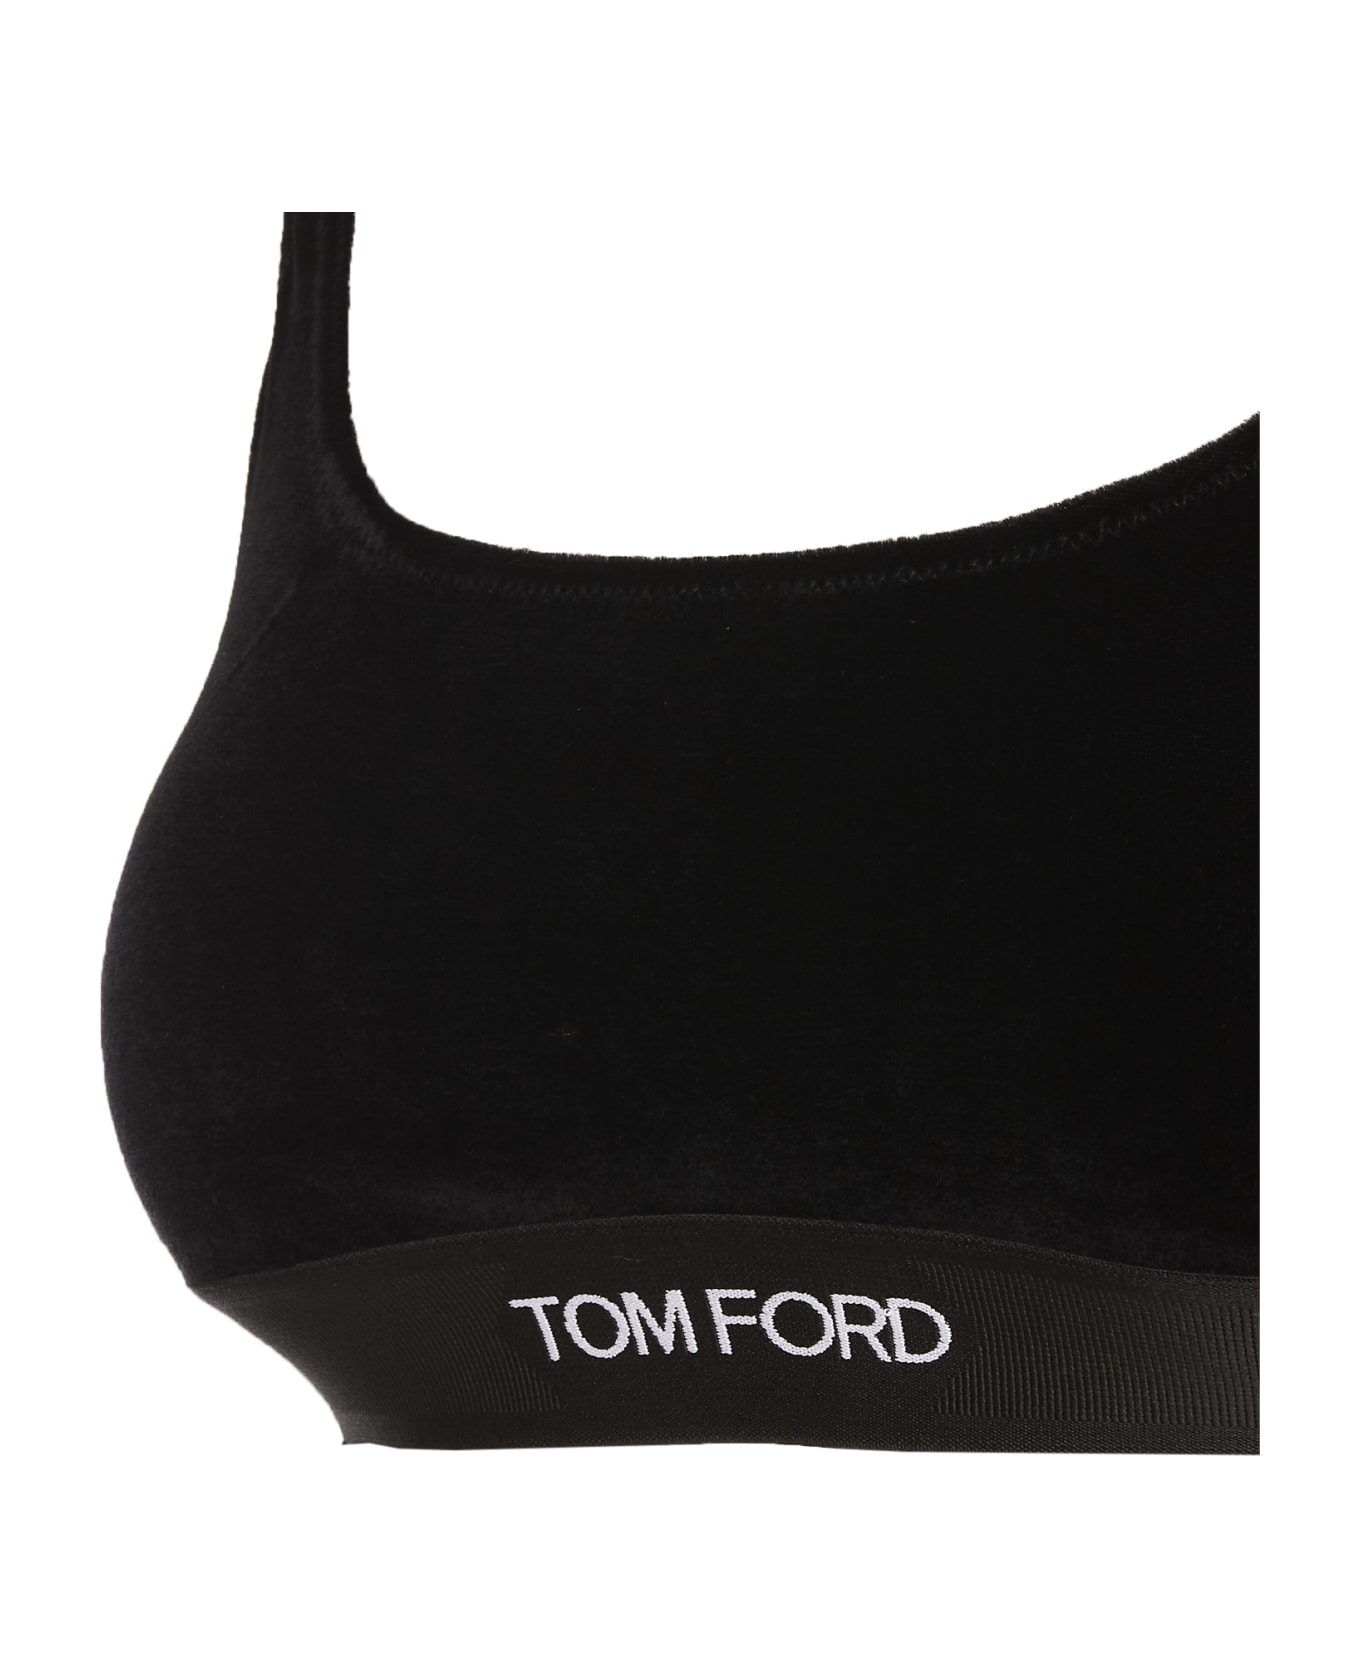 Tom Ford Signature Velvet Top - Black